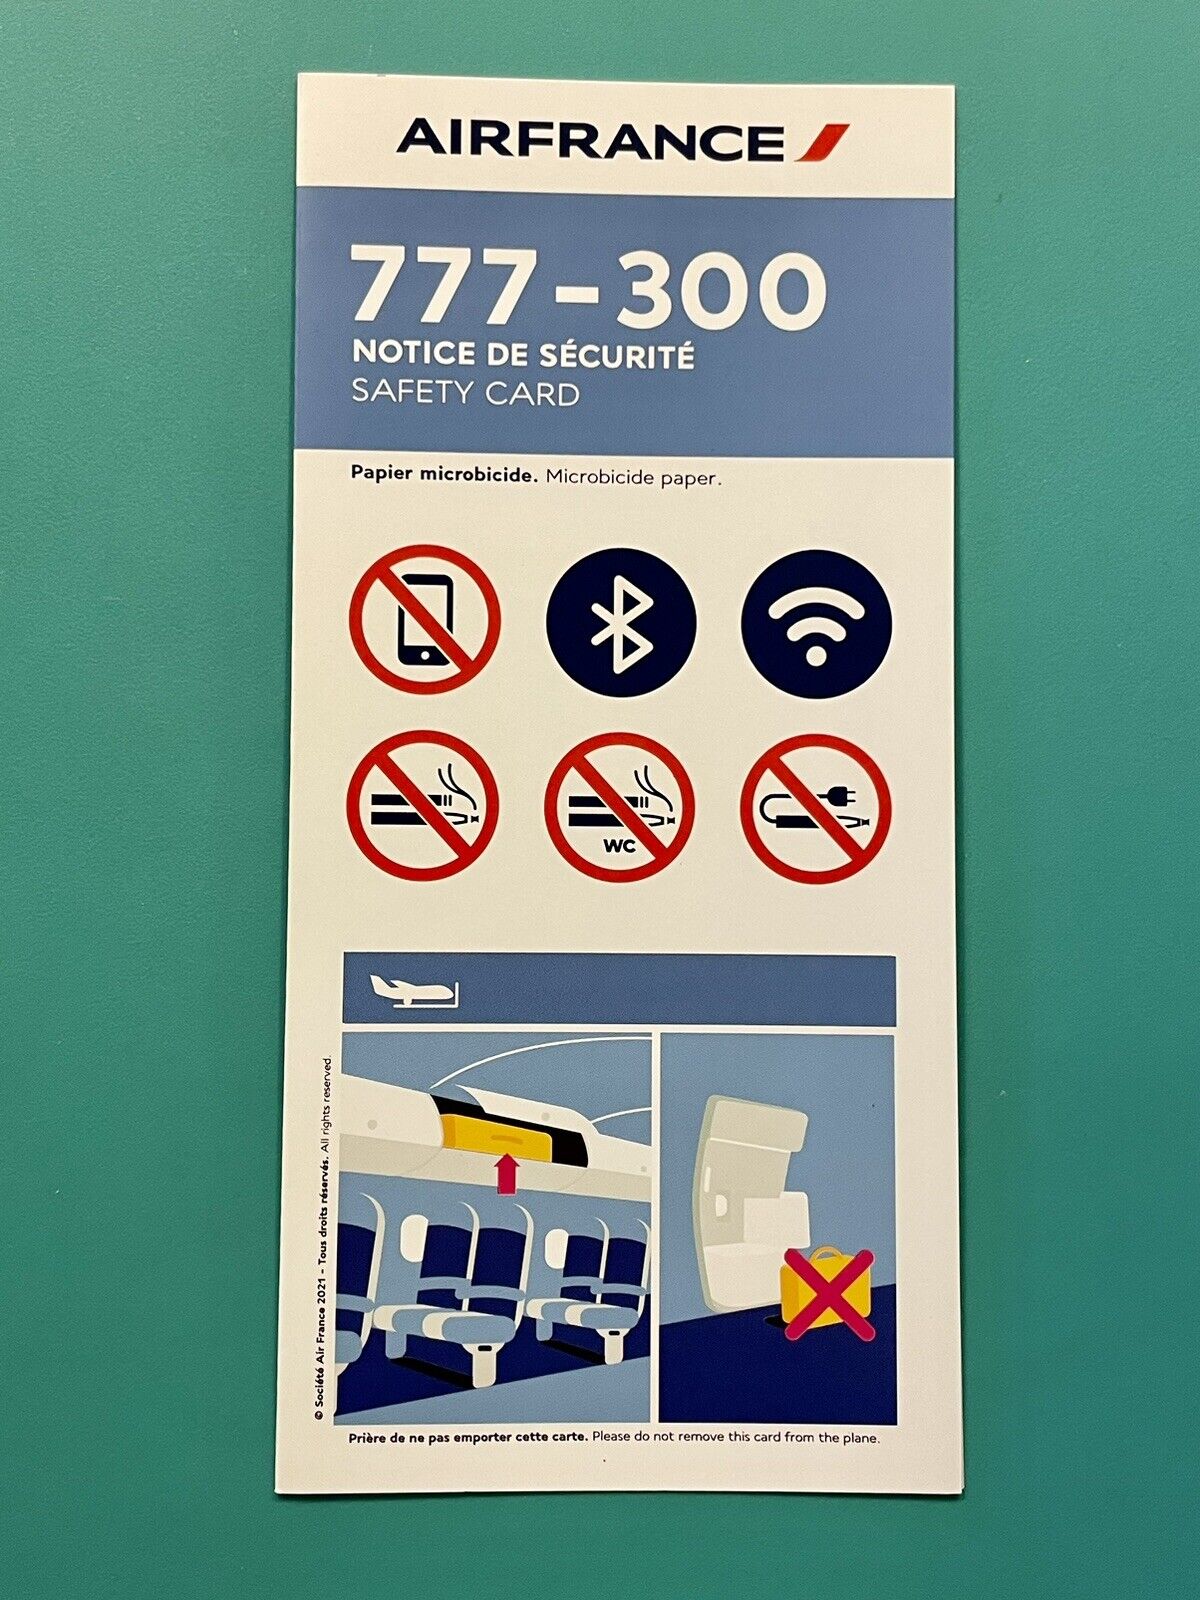 AIR FRANCE SAFETY CARD —777-300–2022